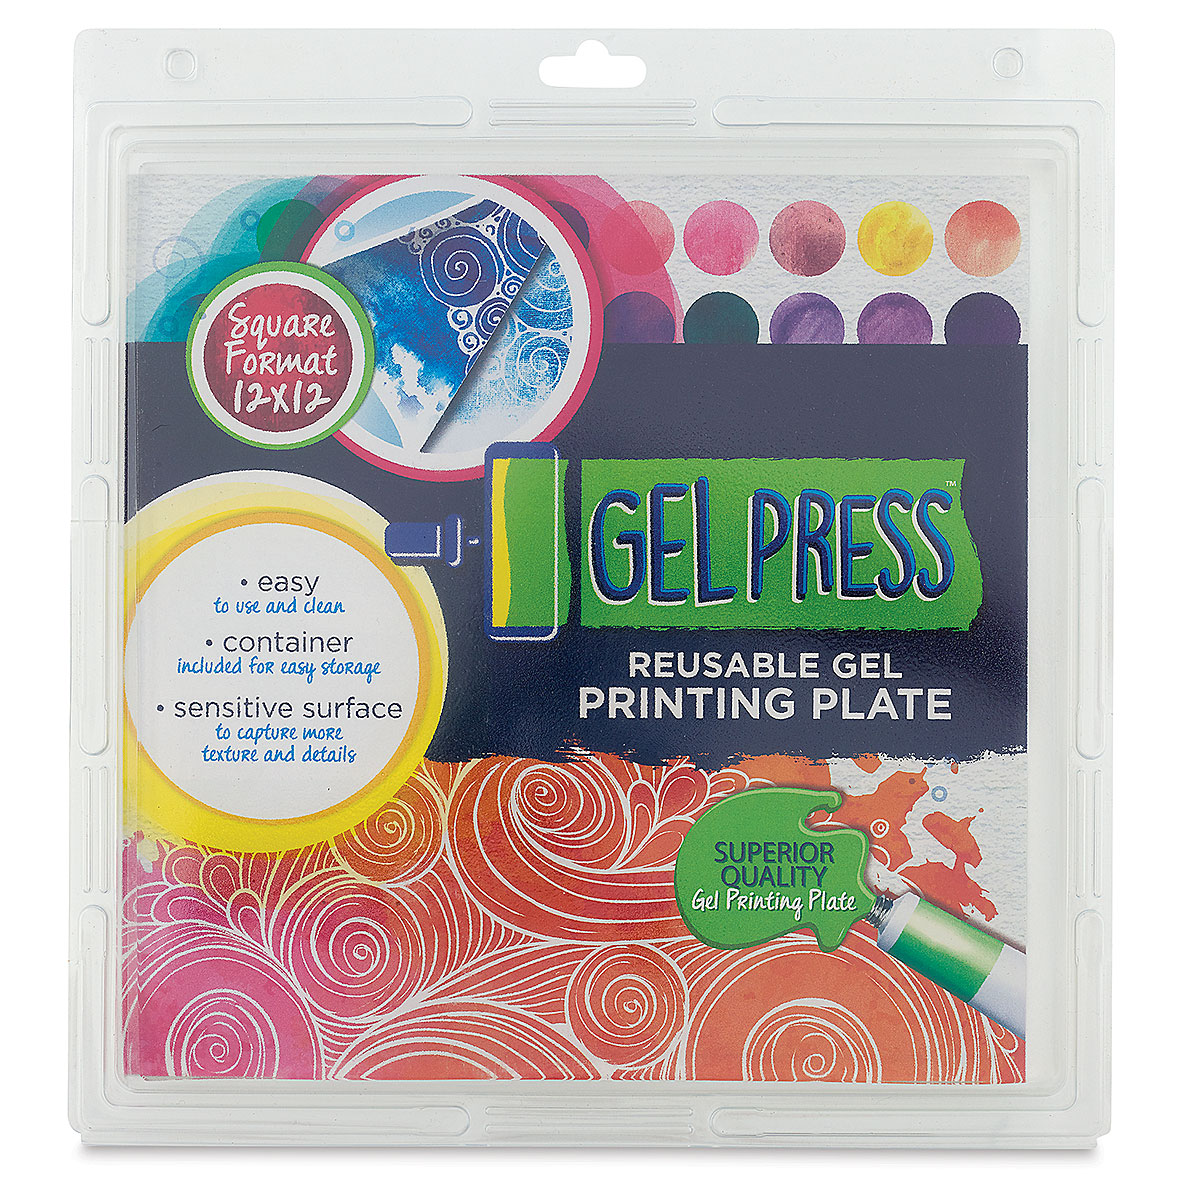 Gel Press Gel Printing Plate